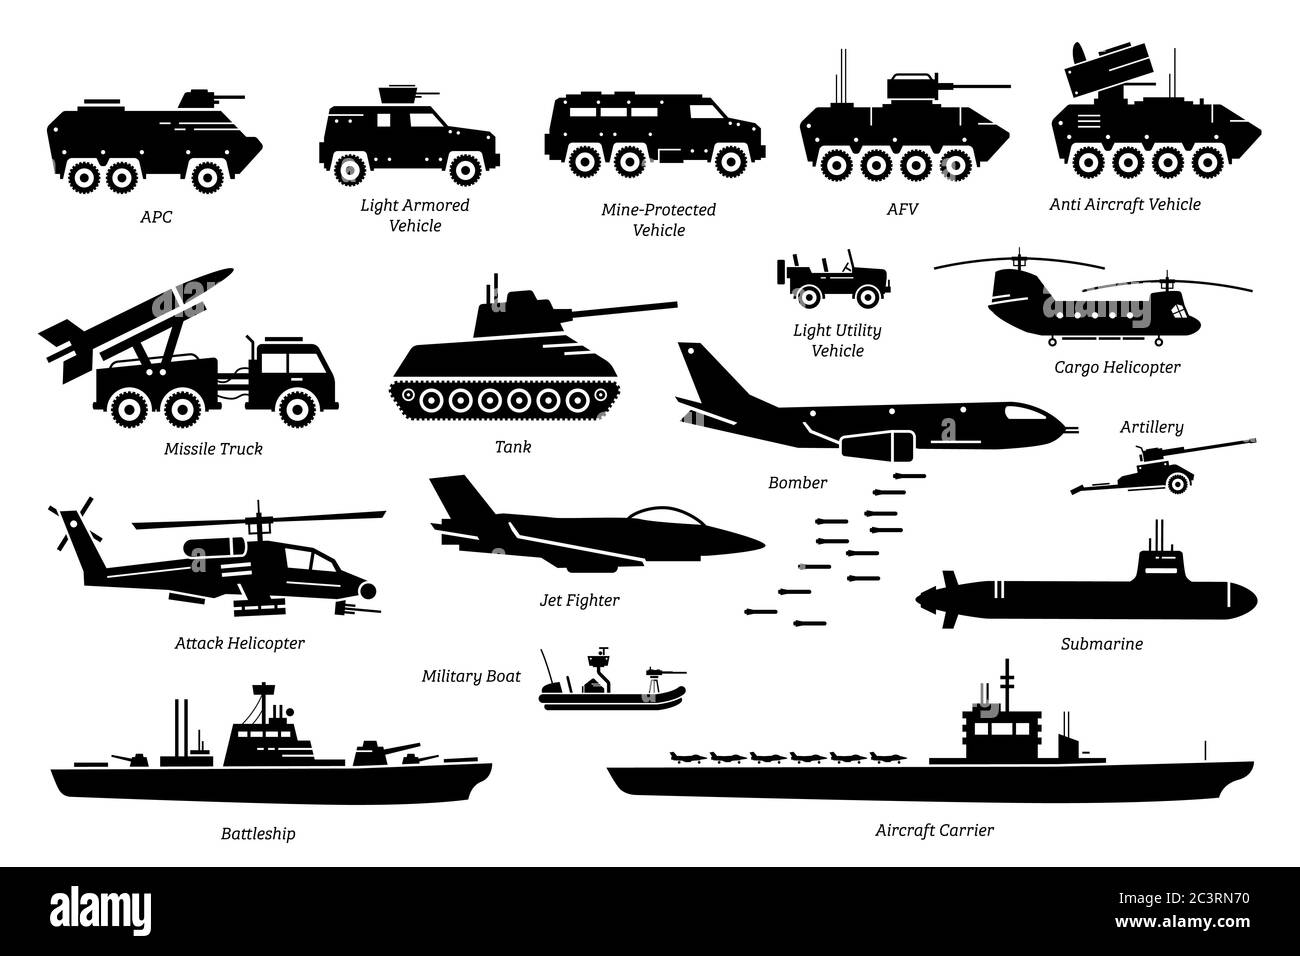 Veicoli da combattimento militari, trasporto e set di icone della macchina. Illustrazione di veicolo armato esercito, carro armato, camion missilistico, bombardiere, elicottero attacco, Illustrazione Vettoriale